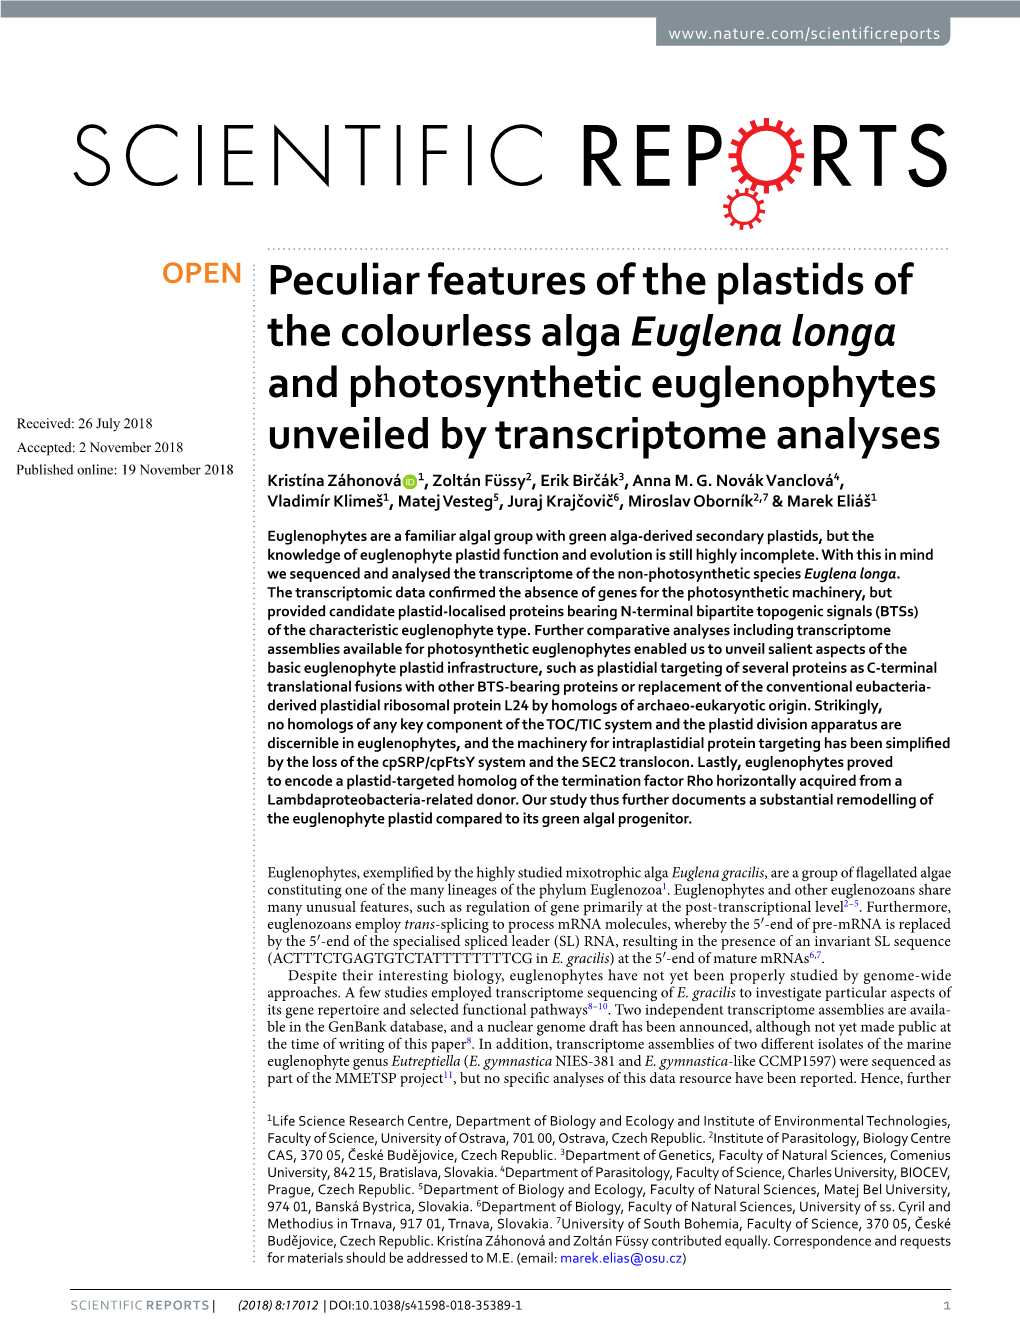 Peculiar Features of the Plastids of the Colourless Alga Euglena Longa And